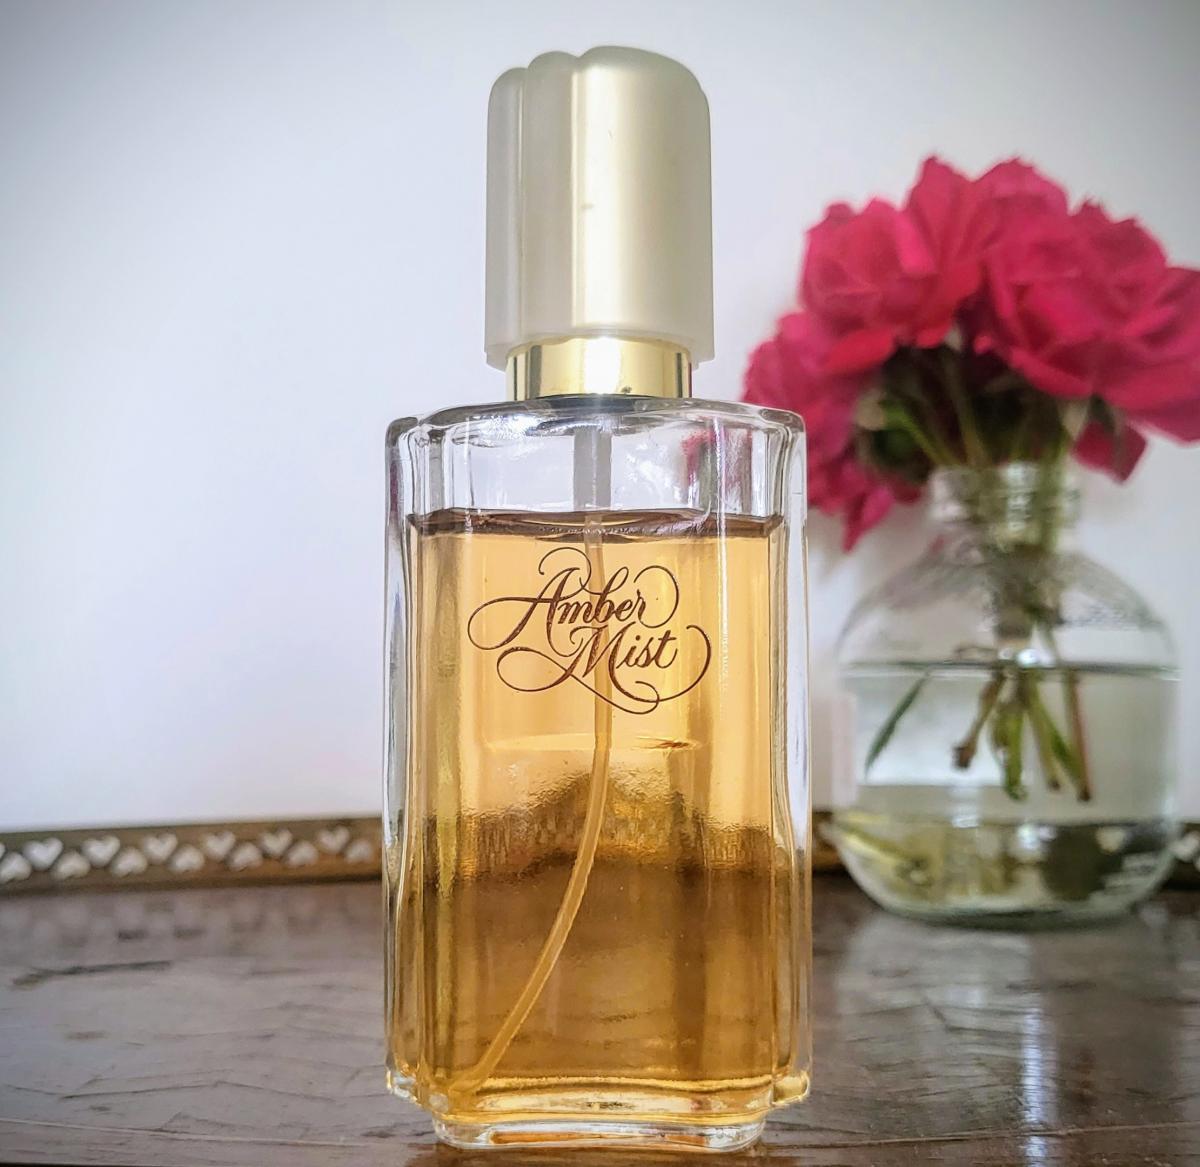 Amber Mist Avon perfume - a fragrance for women 1983